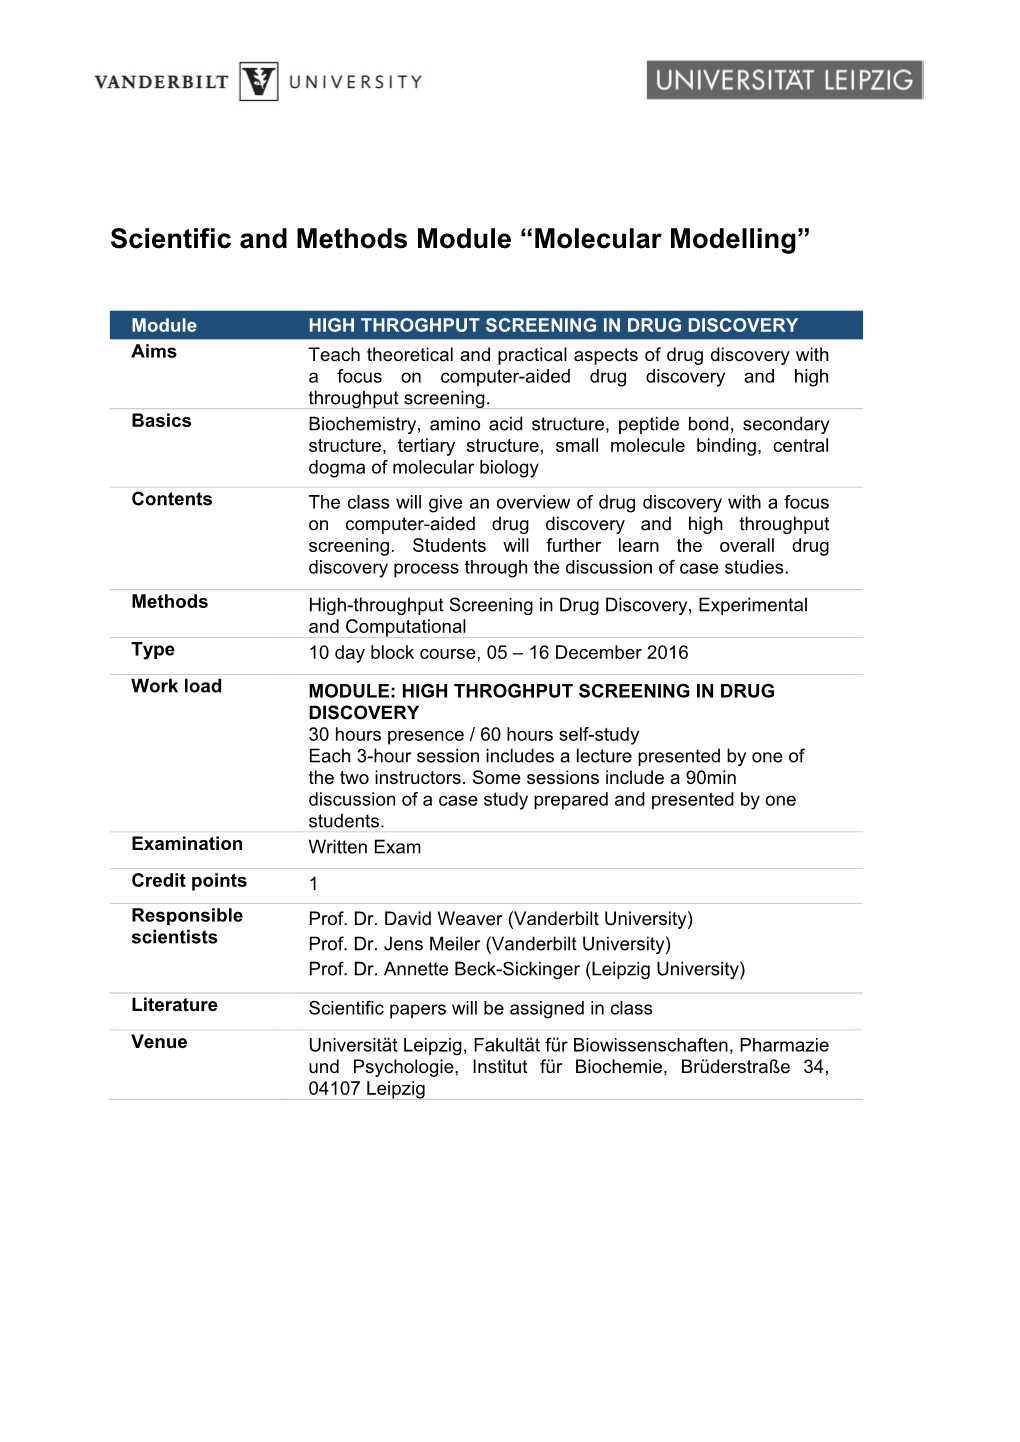 Molecular Modelling”